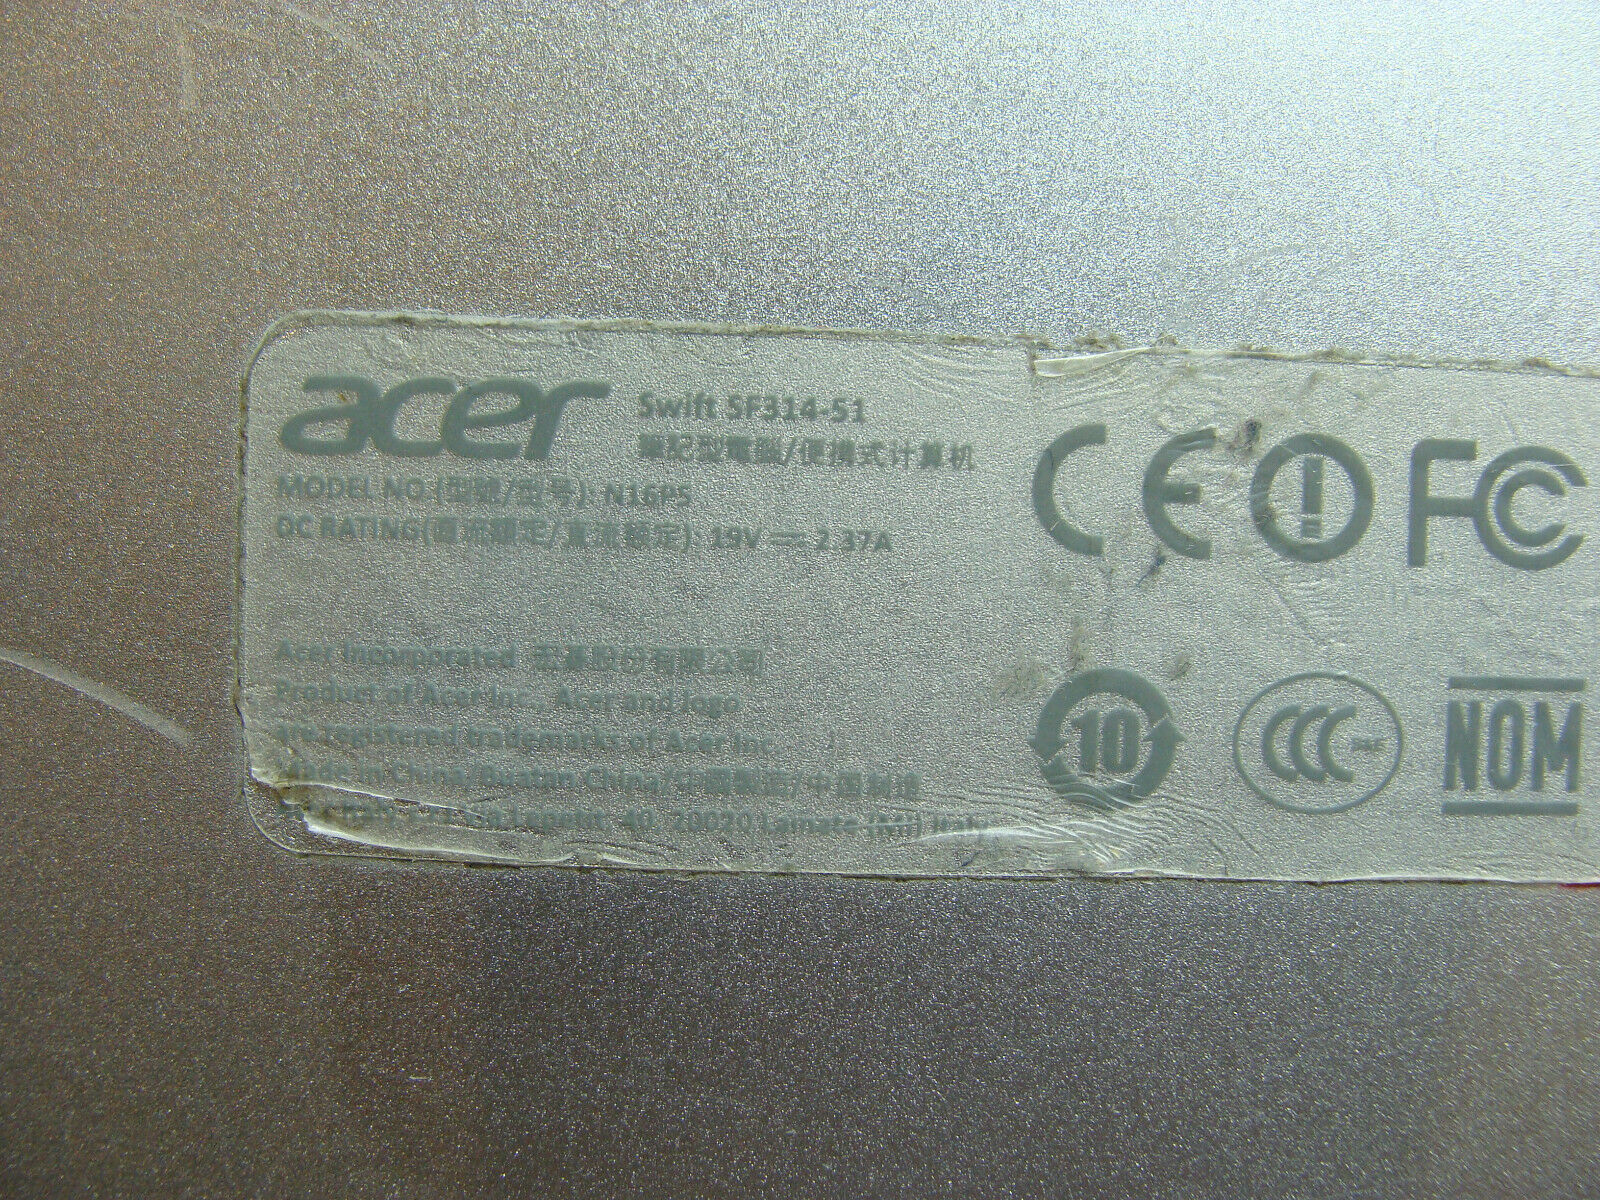 Acer Swift SF314-51-384Z 14